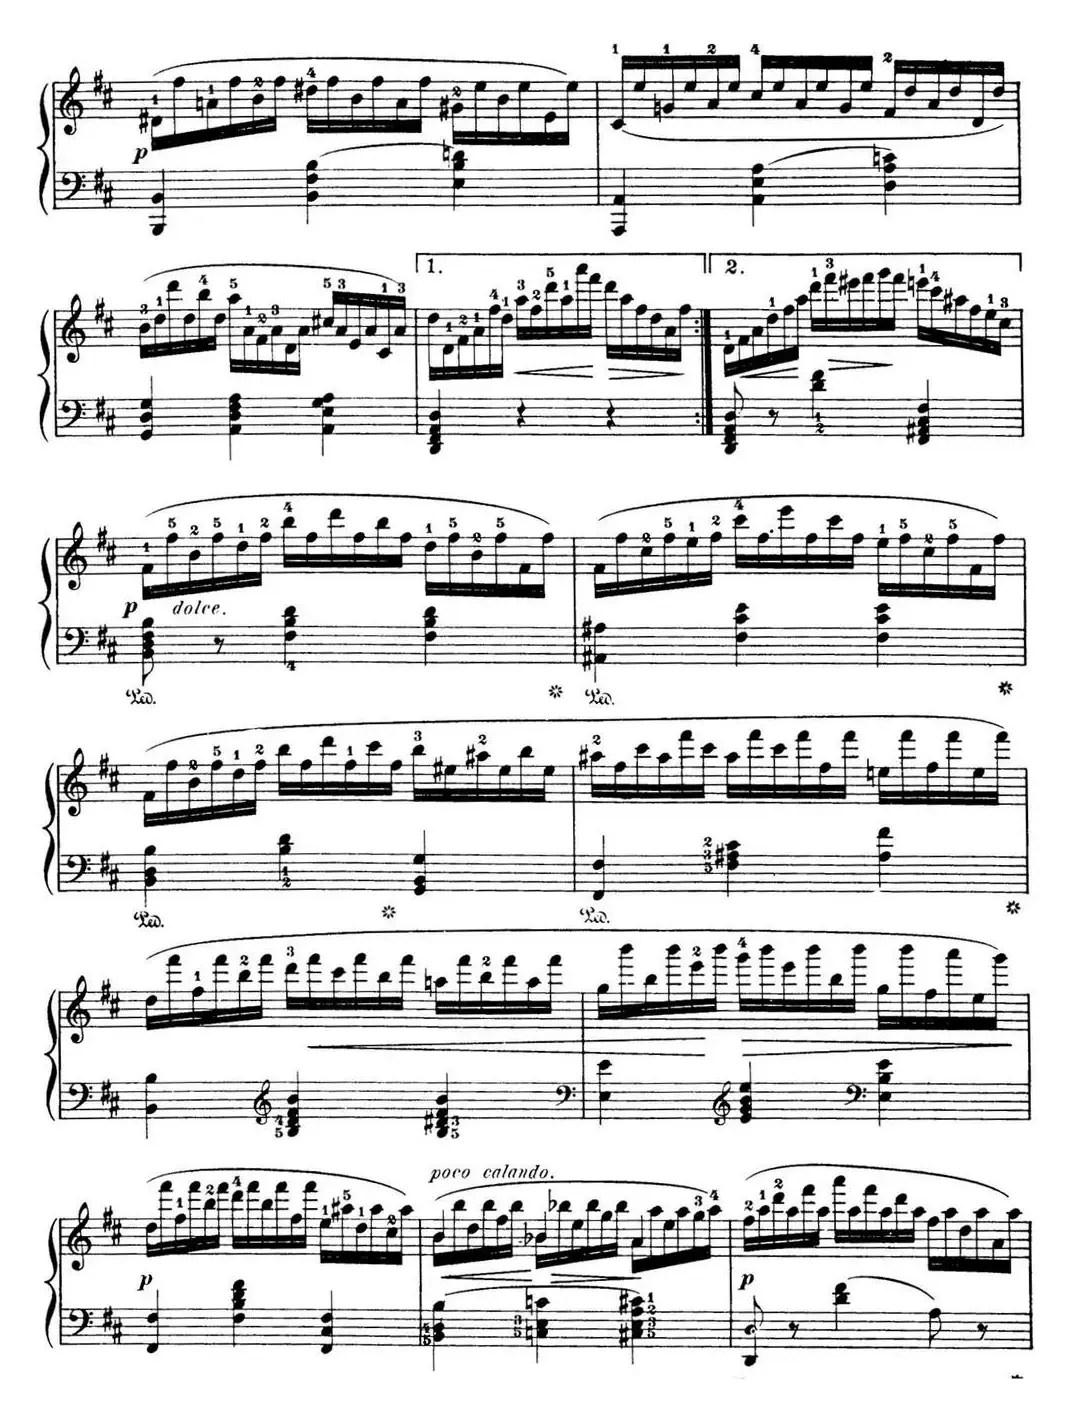 50首车尔尼Op.740钢琴手指灵巧技术练习曲（NO.43）